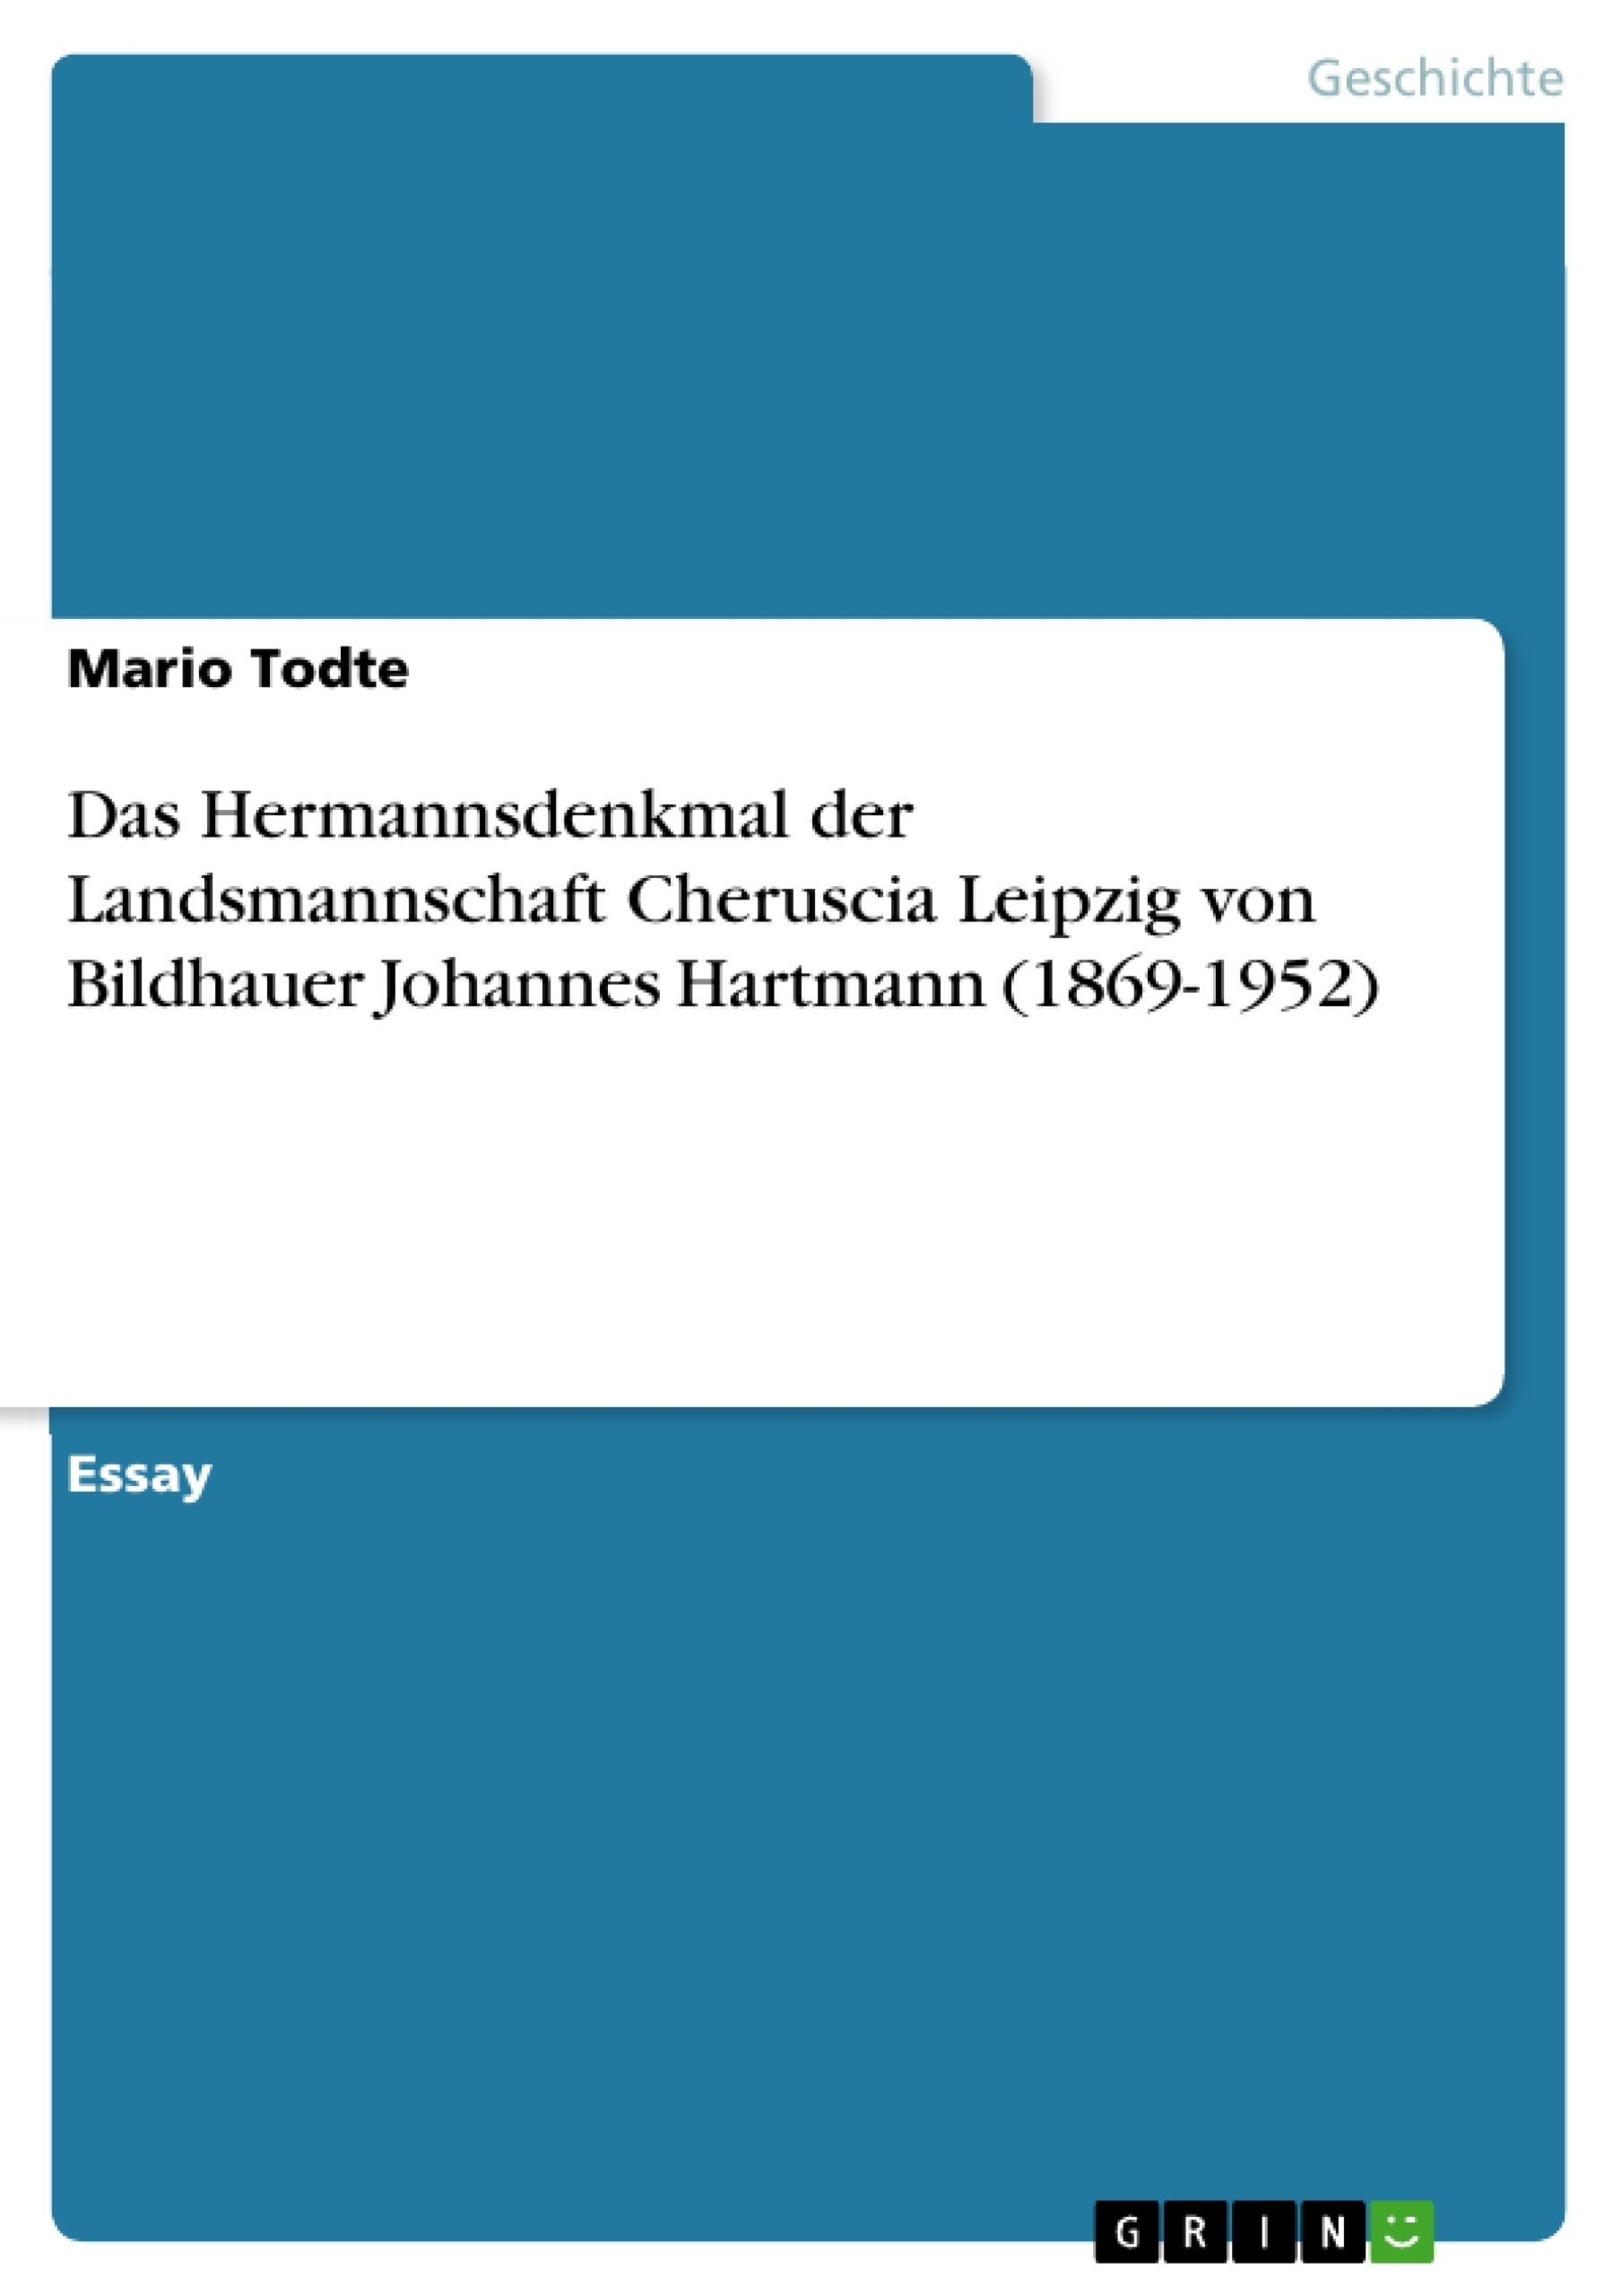 Title: Das Hermannsdenkmal der Landsmannschaft Cheruscia Leipzig von Bildhauer Johannes Hartmann (1869-1952)